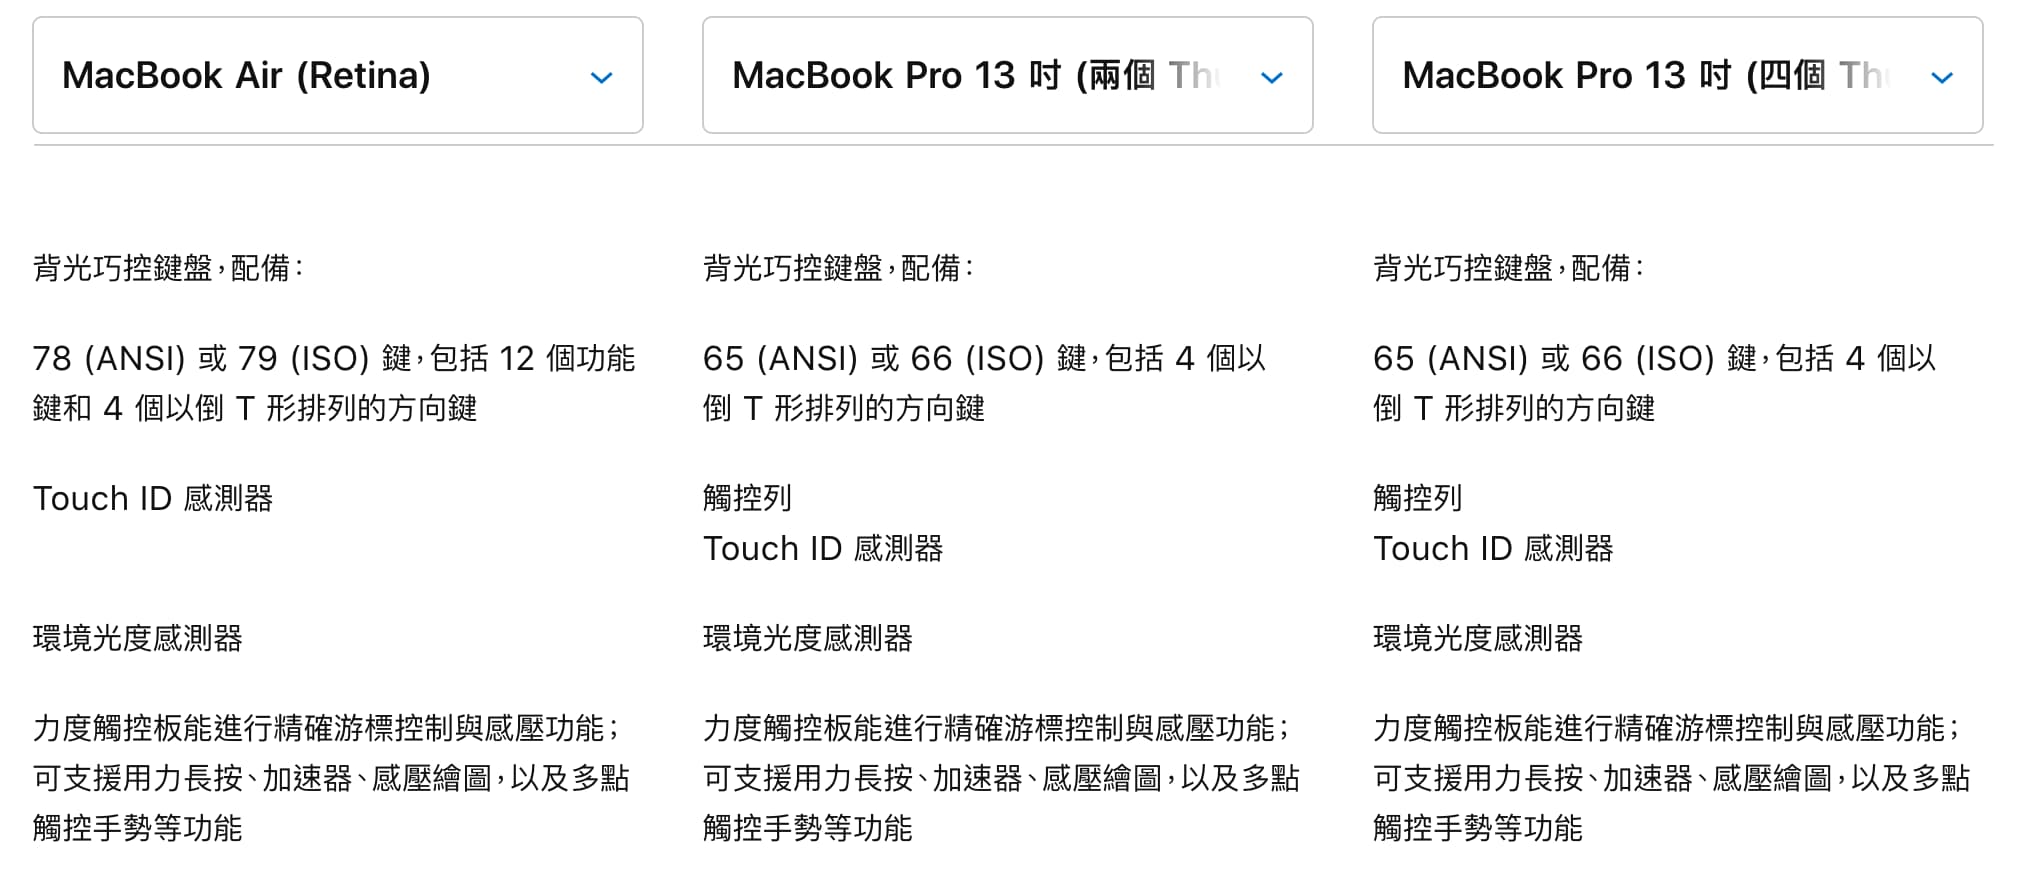 鍵盤和觸控版差異 2020 MacBook Air vs. 2020 Macbook Pro 13吋(入門款) vs. 2020 Macbook Pro 13吋(進階款)